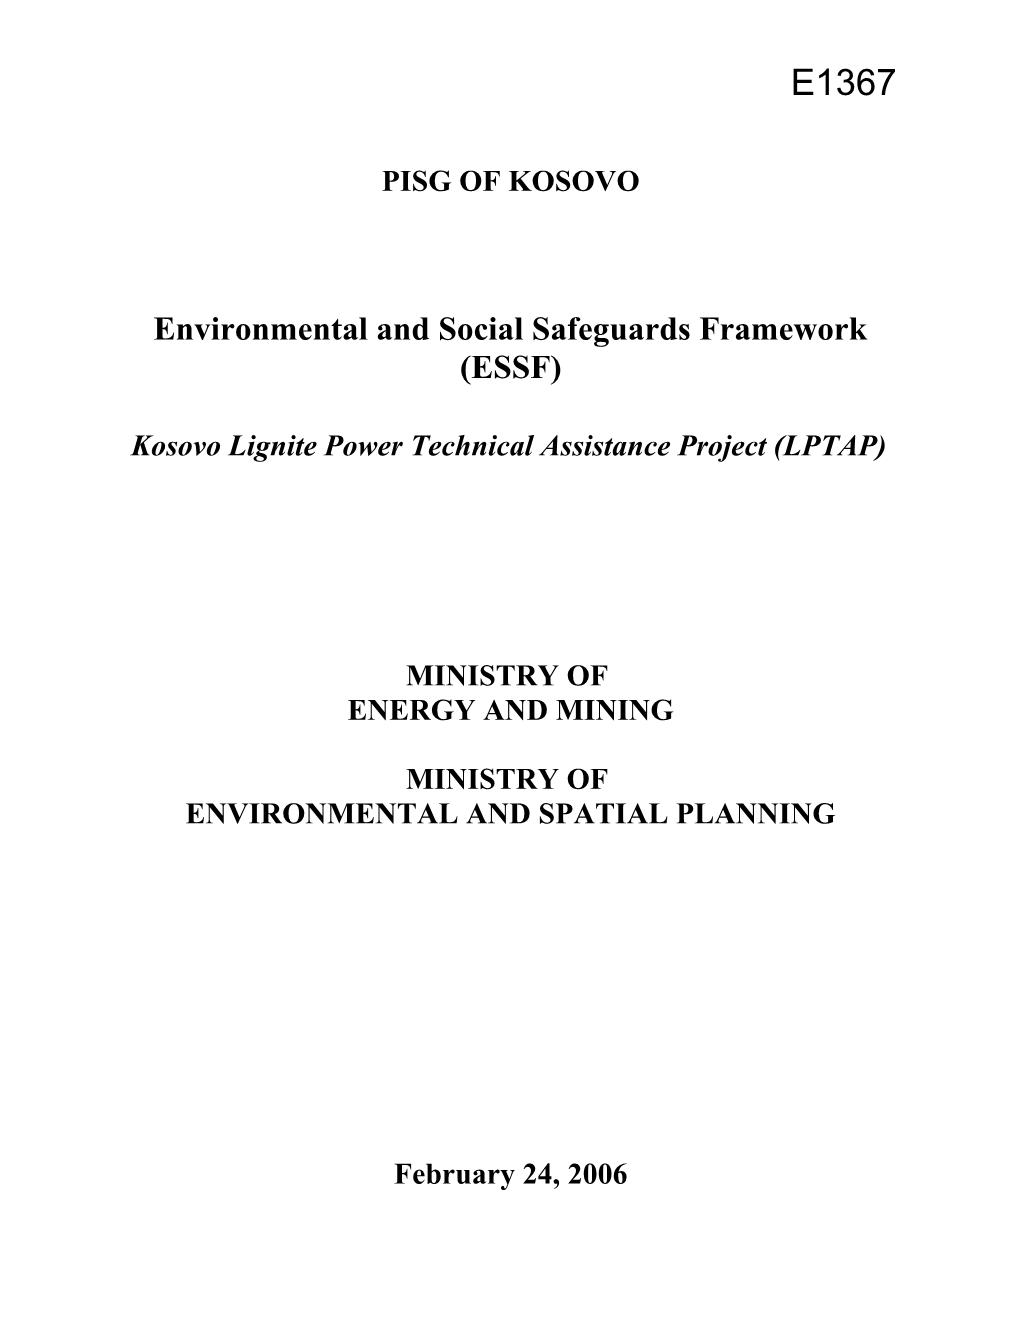 Environmental and Social Safeguards Framework (ESSF)